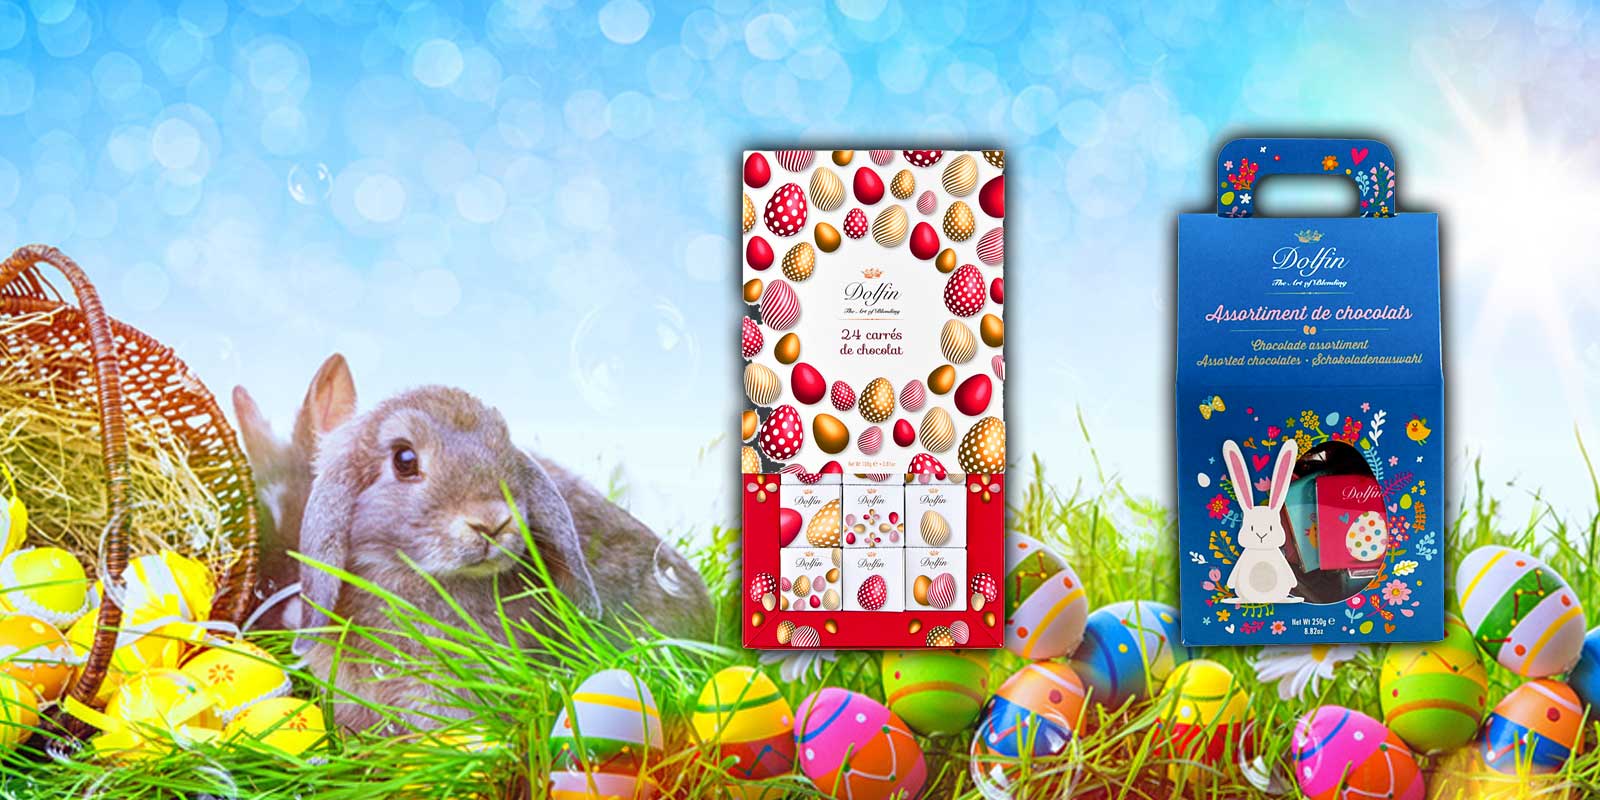 Pasqua Aqui trobareu una seleccio de xocolata de sorpreses de Pasqua de Venchi, Caffarel, Peters Pralinen i Majani